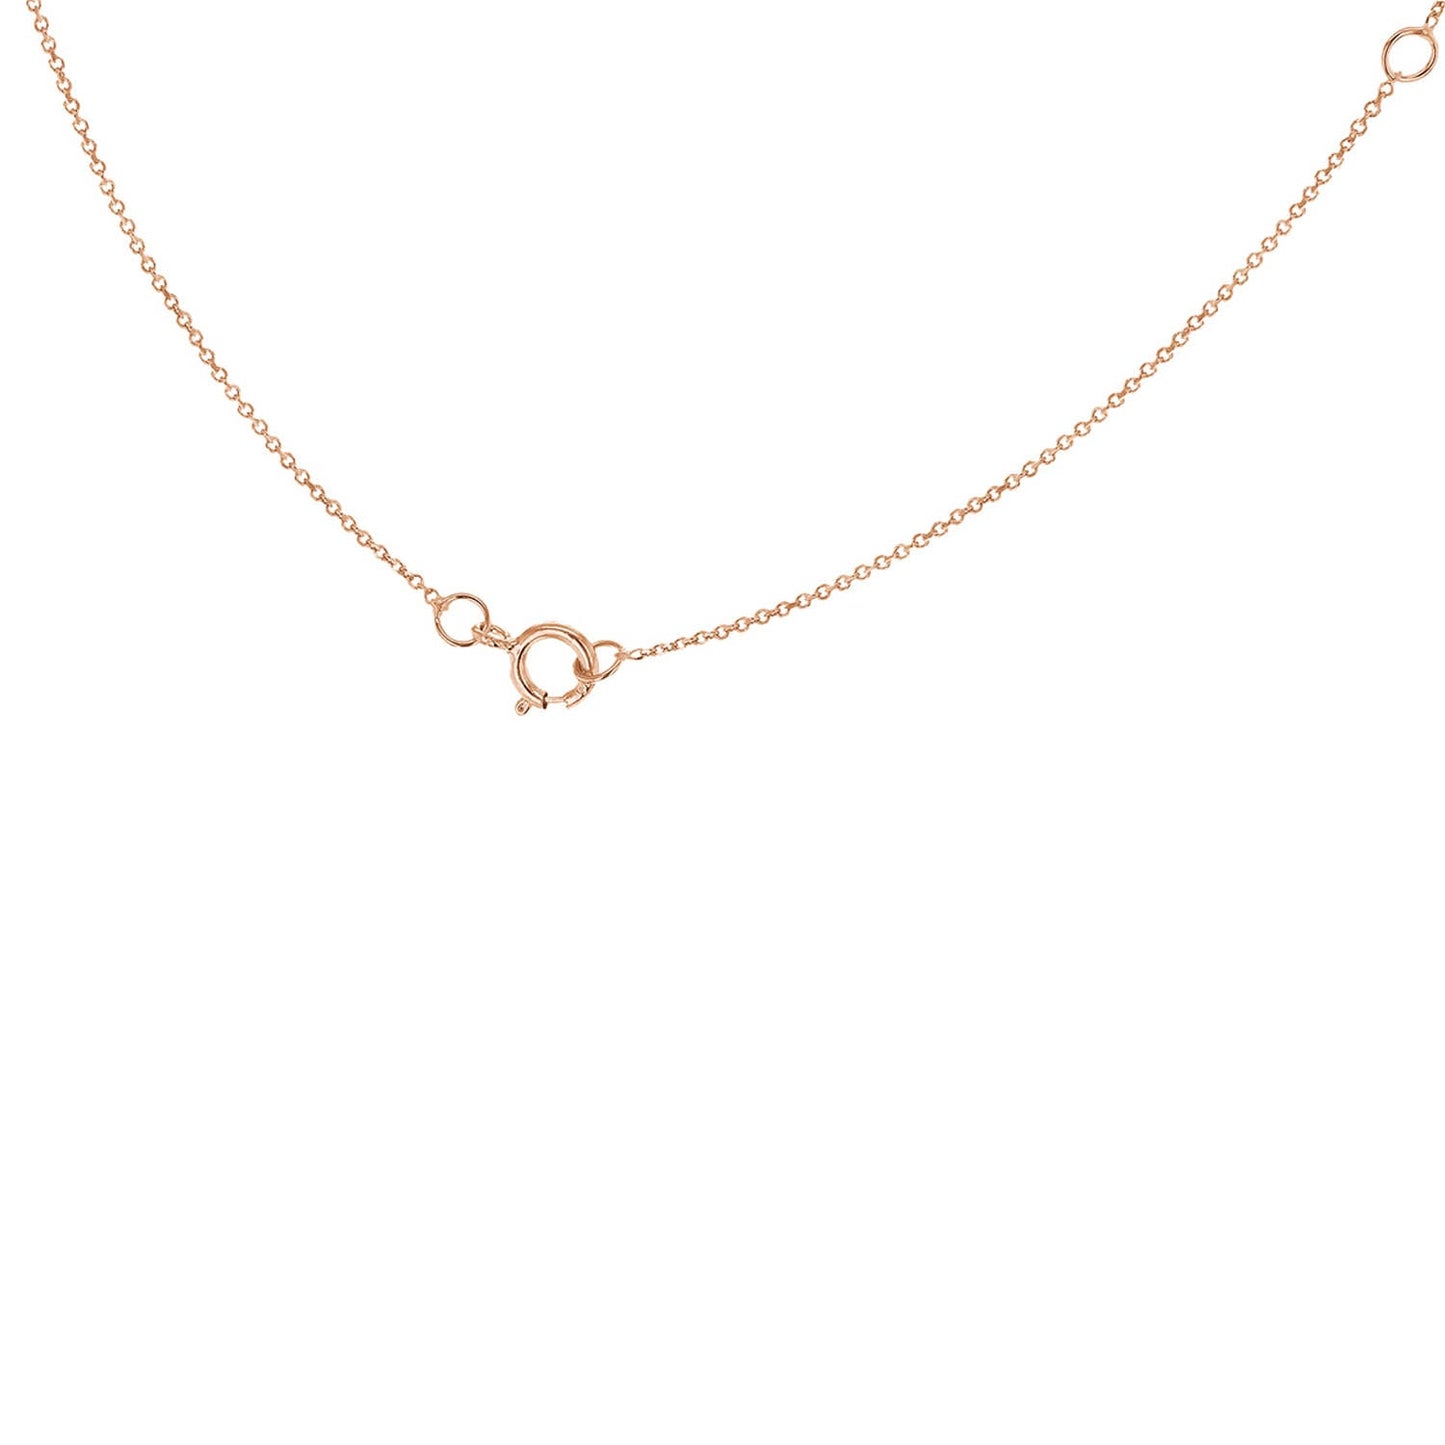 9K Rose Gold 'R' Initial Adjustable Letter Necklace 38/43cm